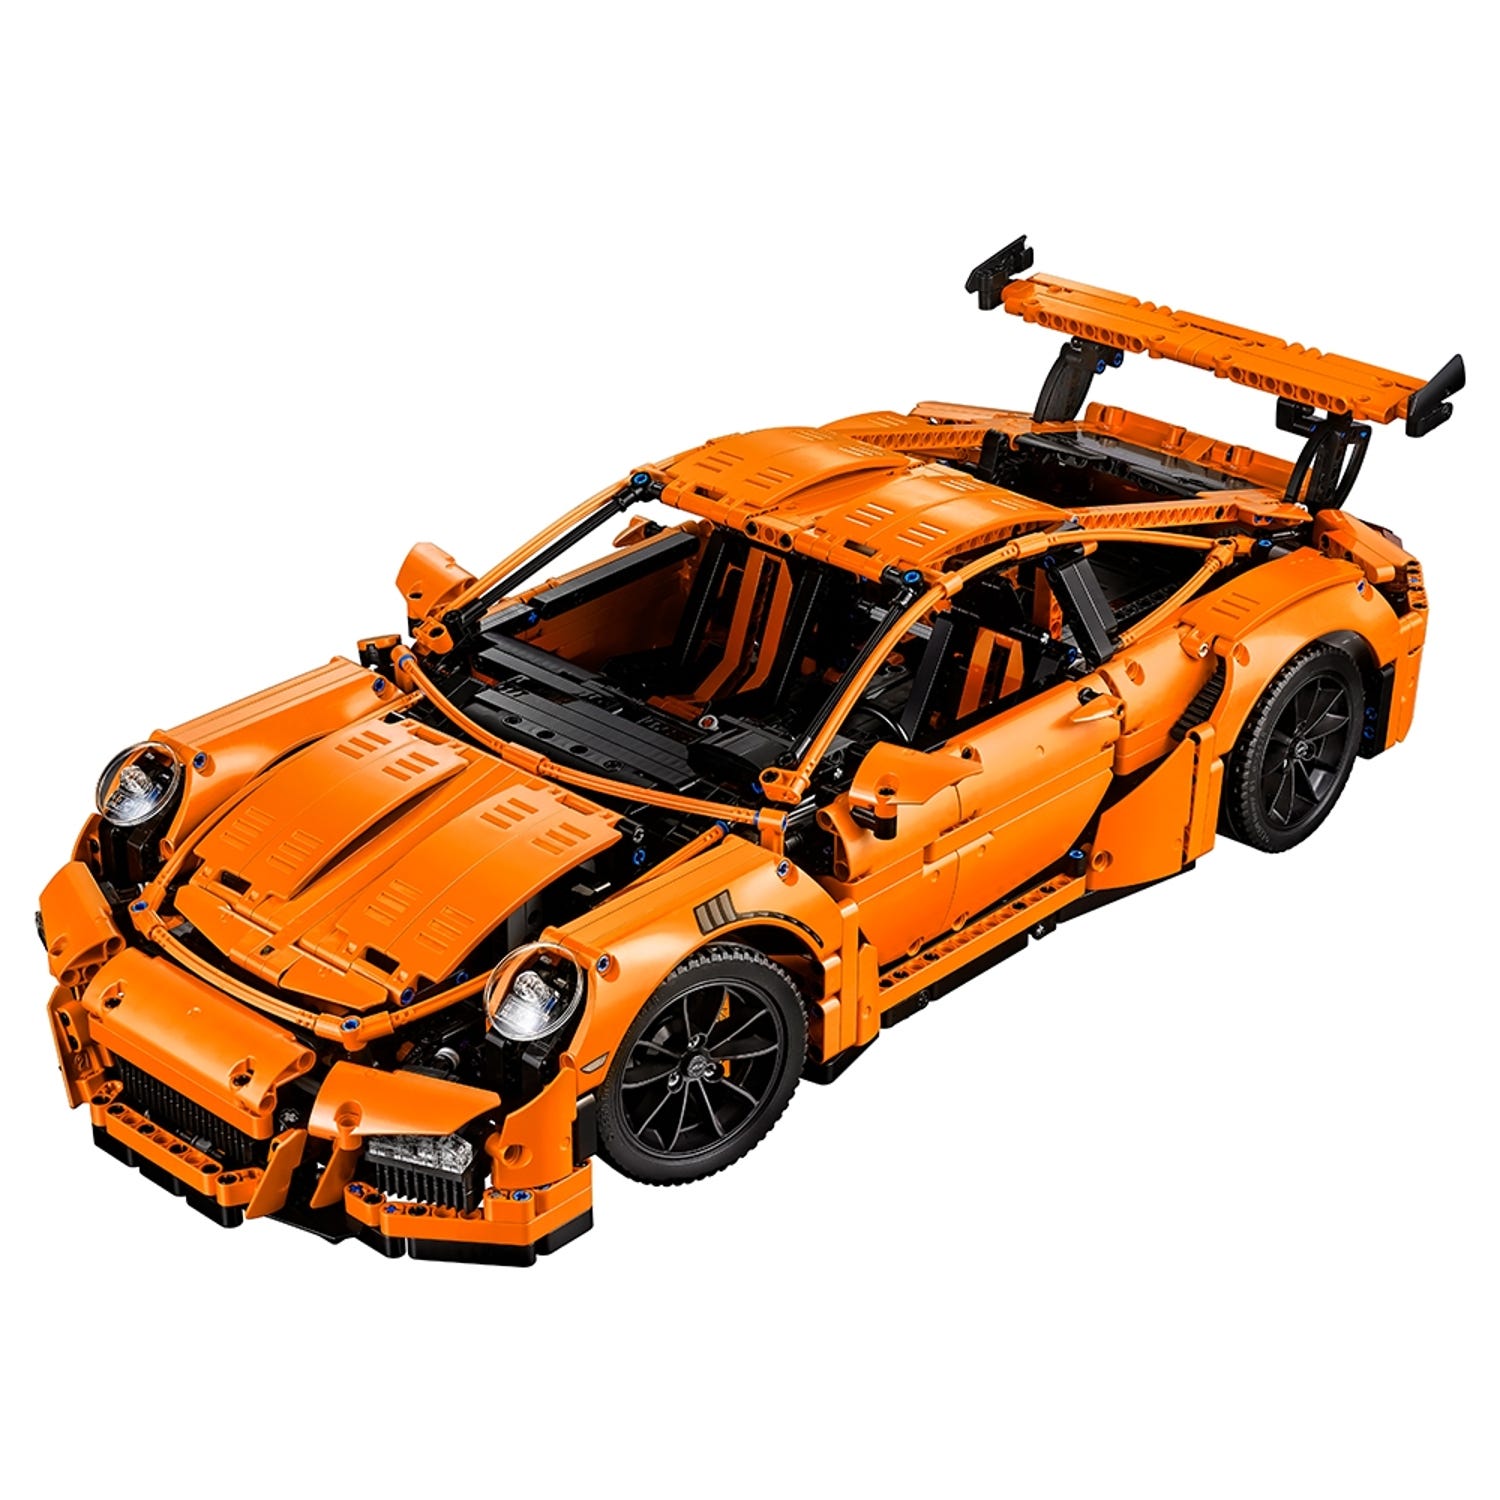 Se produkter som liknar Lego Technic Porsche 911 GT3 .. på Tradera